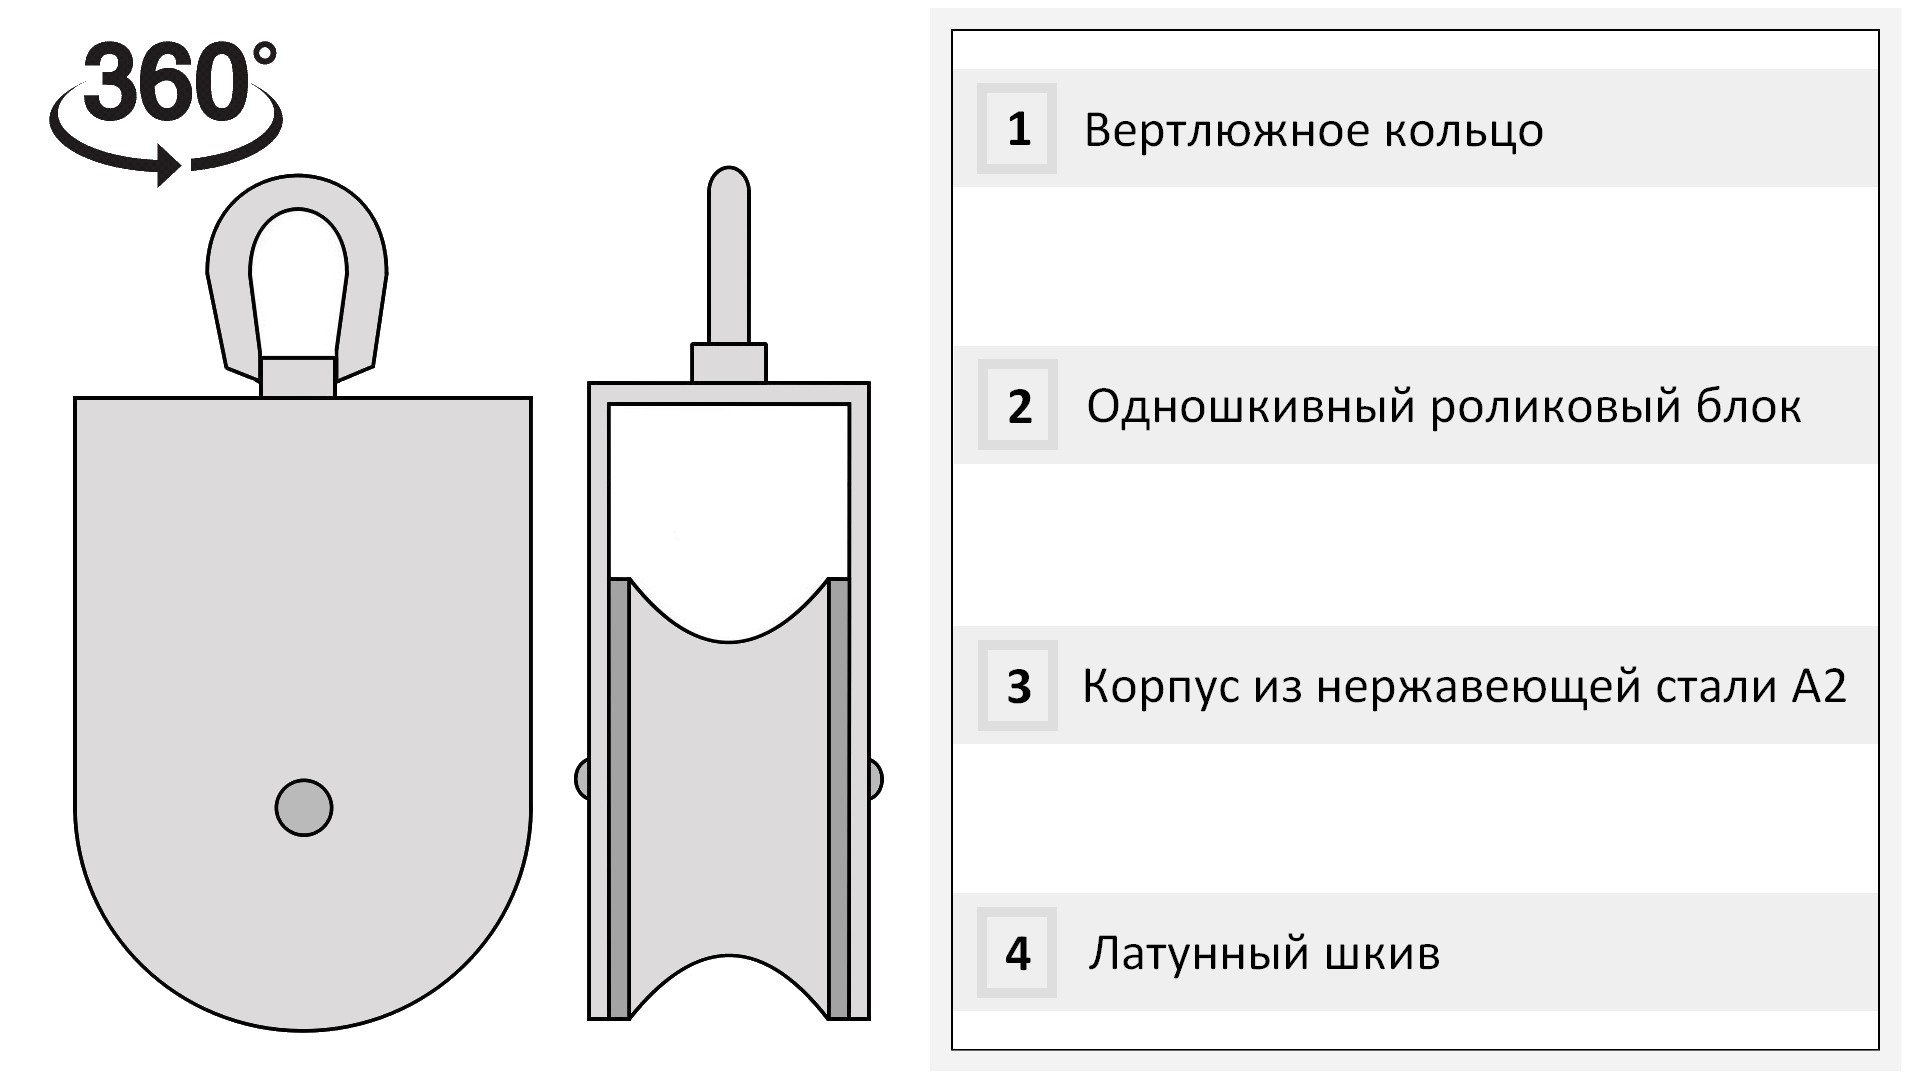 Такелажный блок для троса 16 мм с латунной втулкой 100 мм 8392-C, нержавеющая сталь А2 - фото